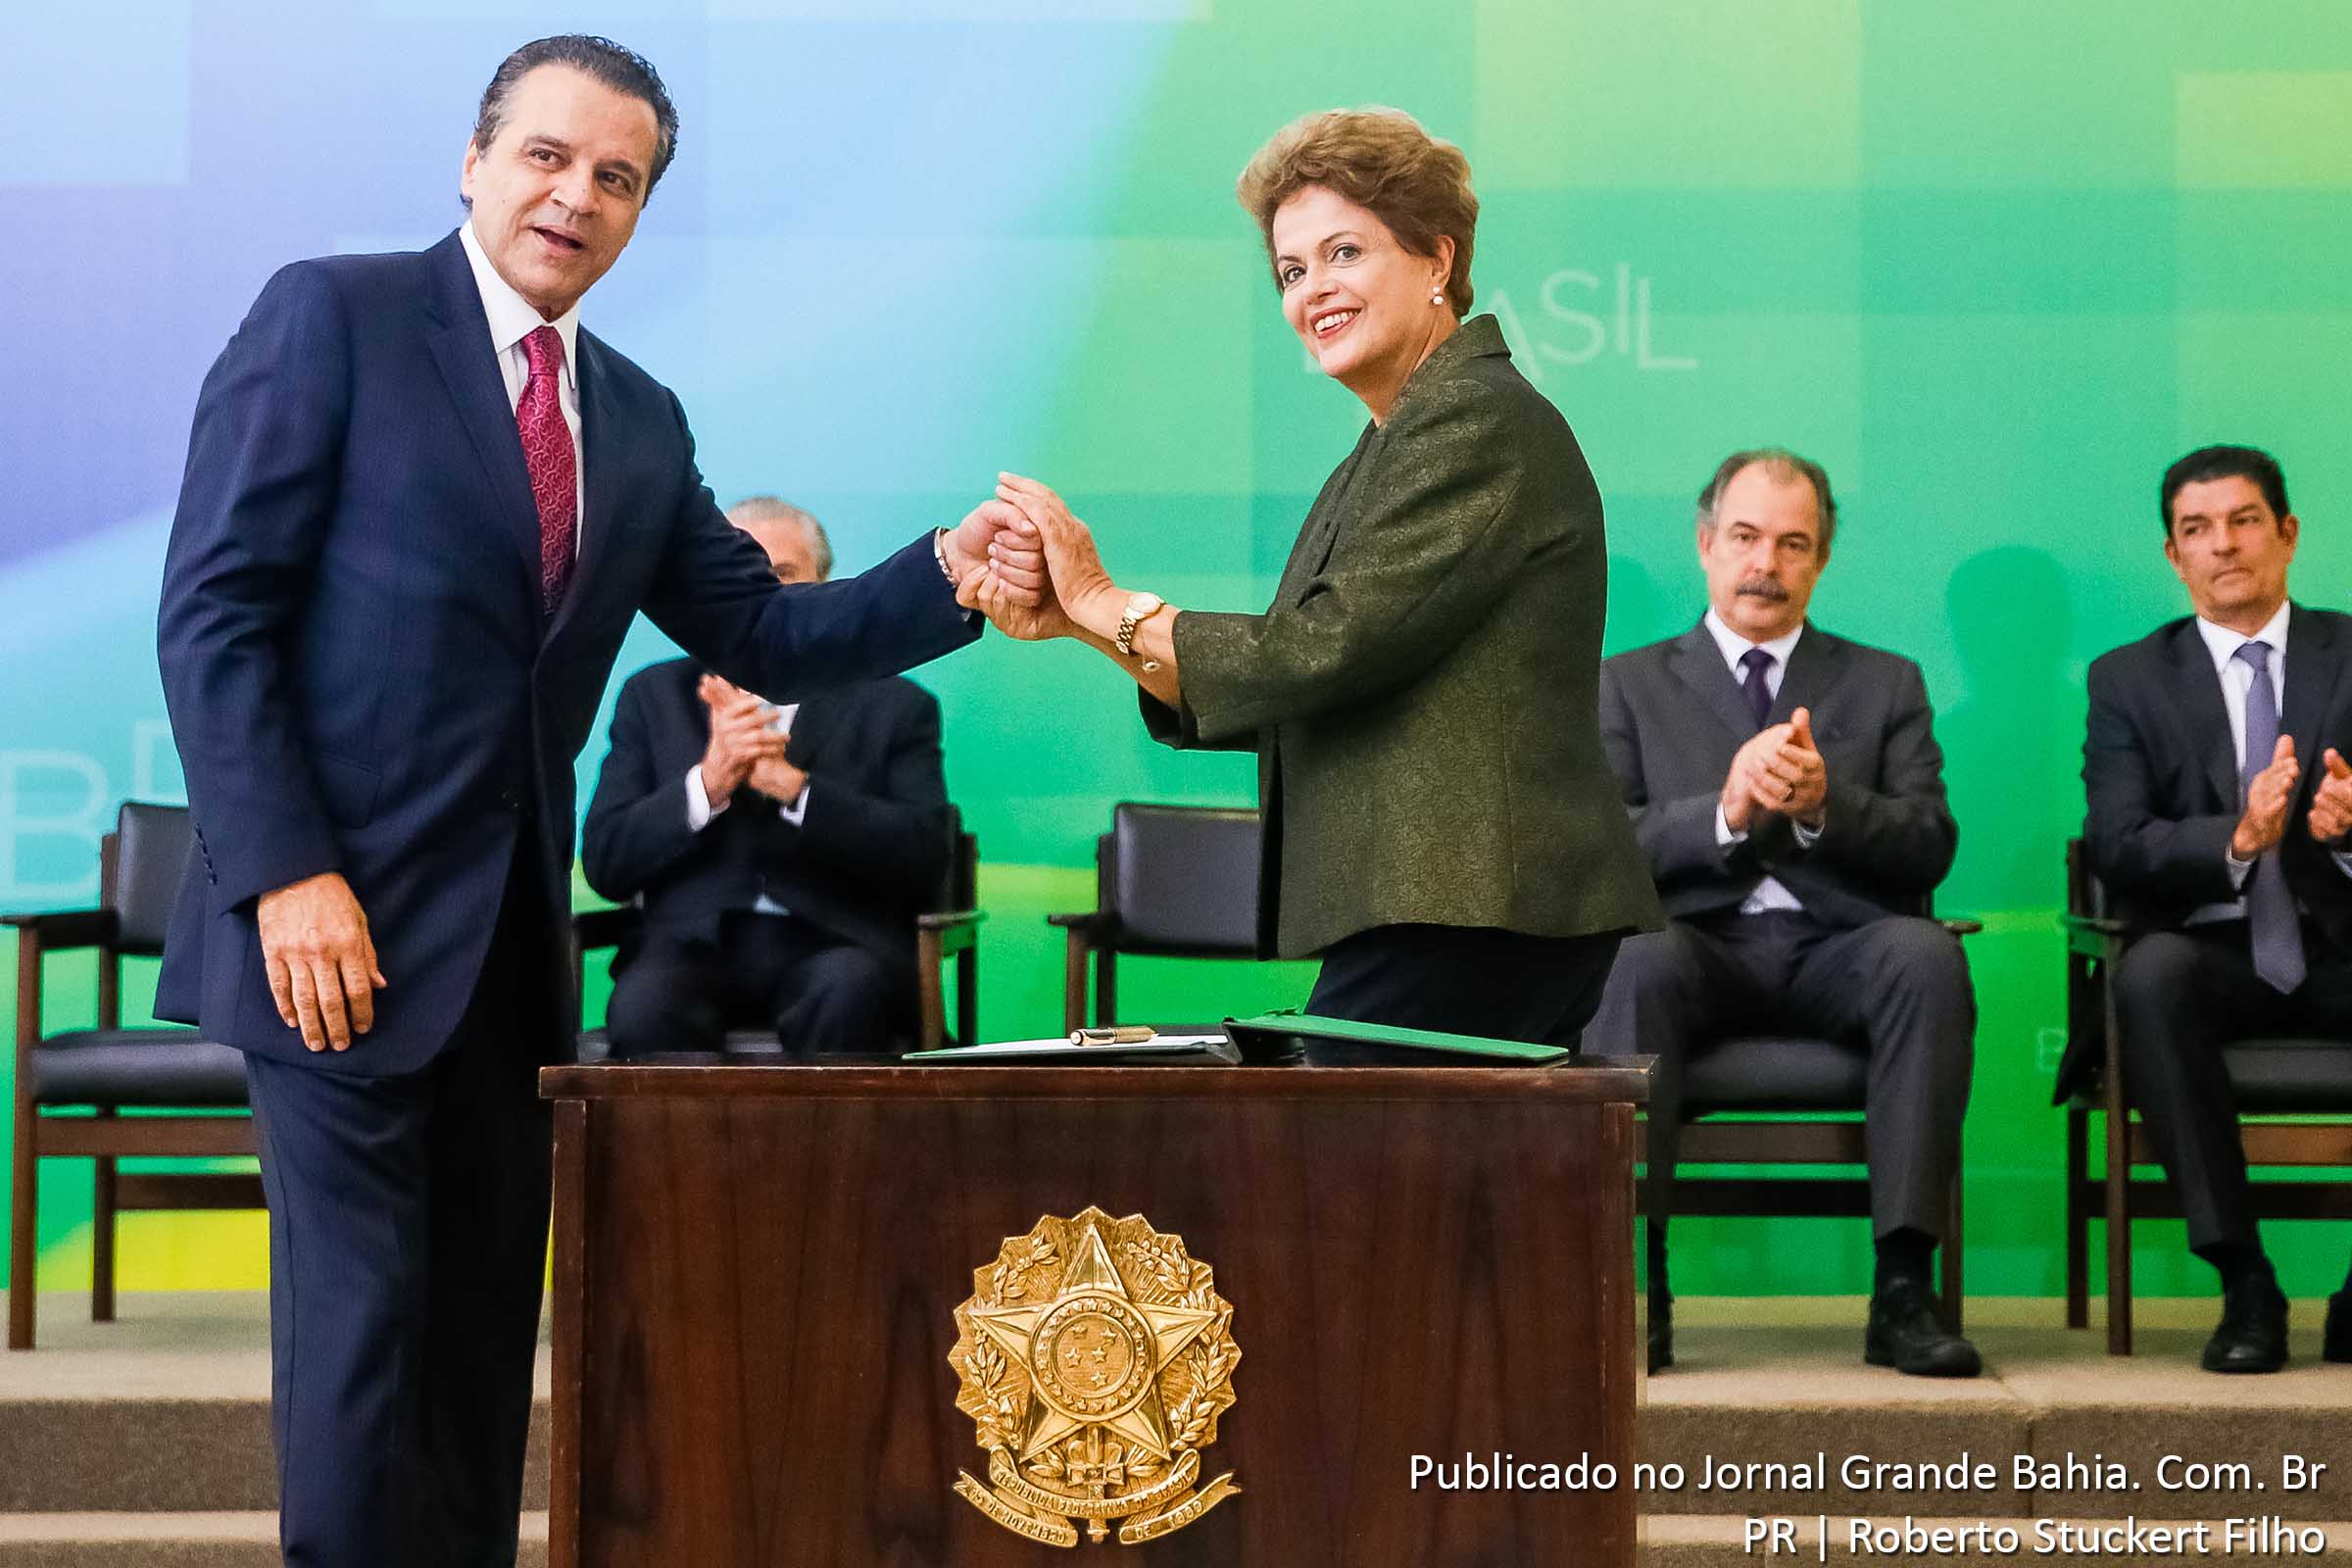 Henrique Eduardo Alves e Dilma Rousseff. A presidenta Dilma Rousseff dá posse ao novo ministro do Turismo, Henrique Eduardo Alves, em cerimônia no Palácio do Planalto.